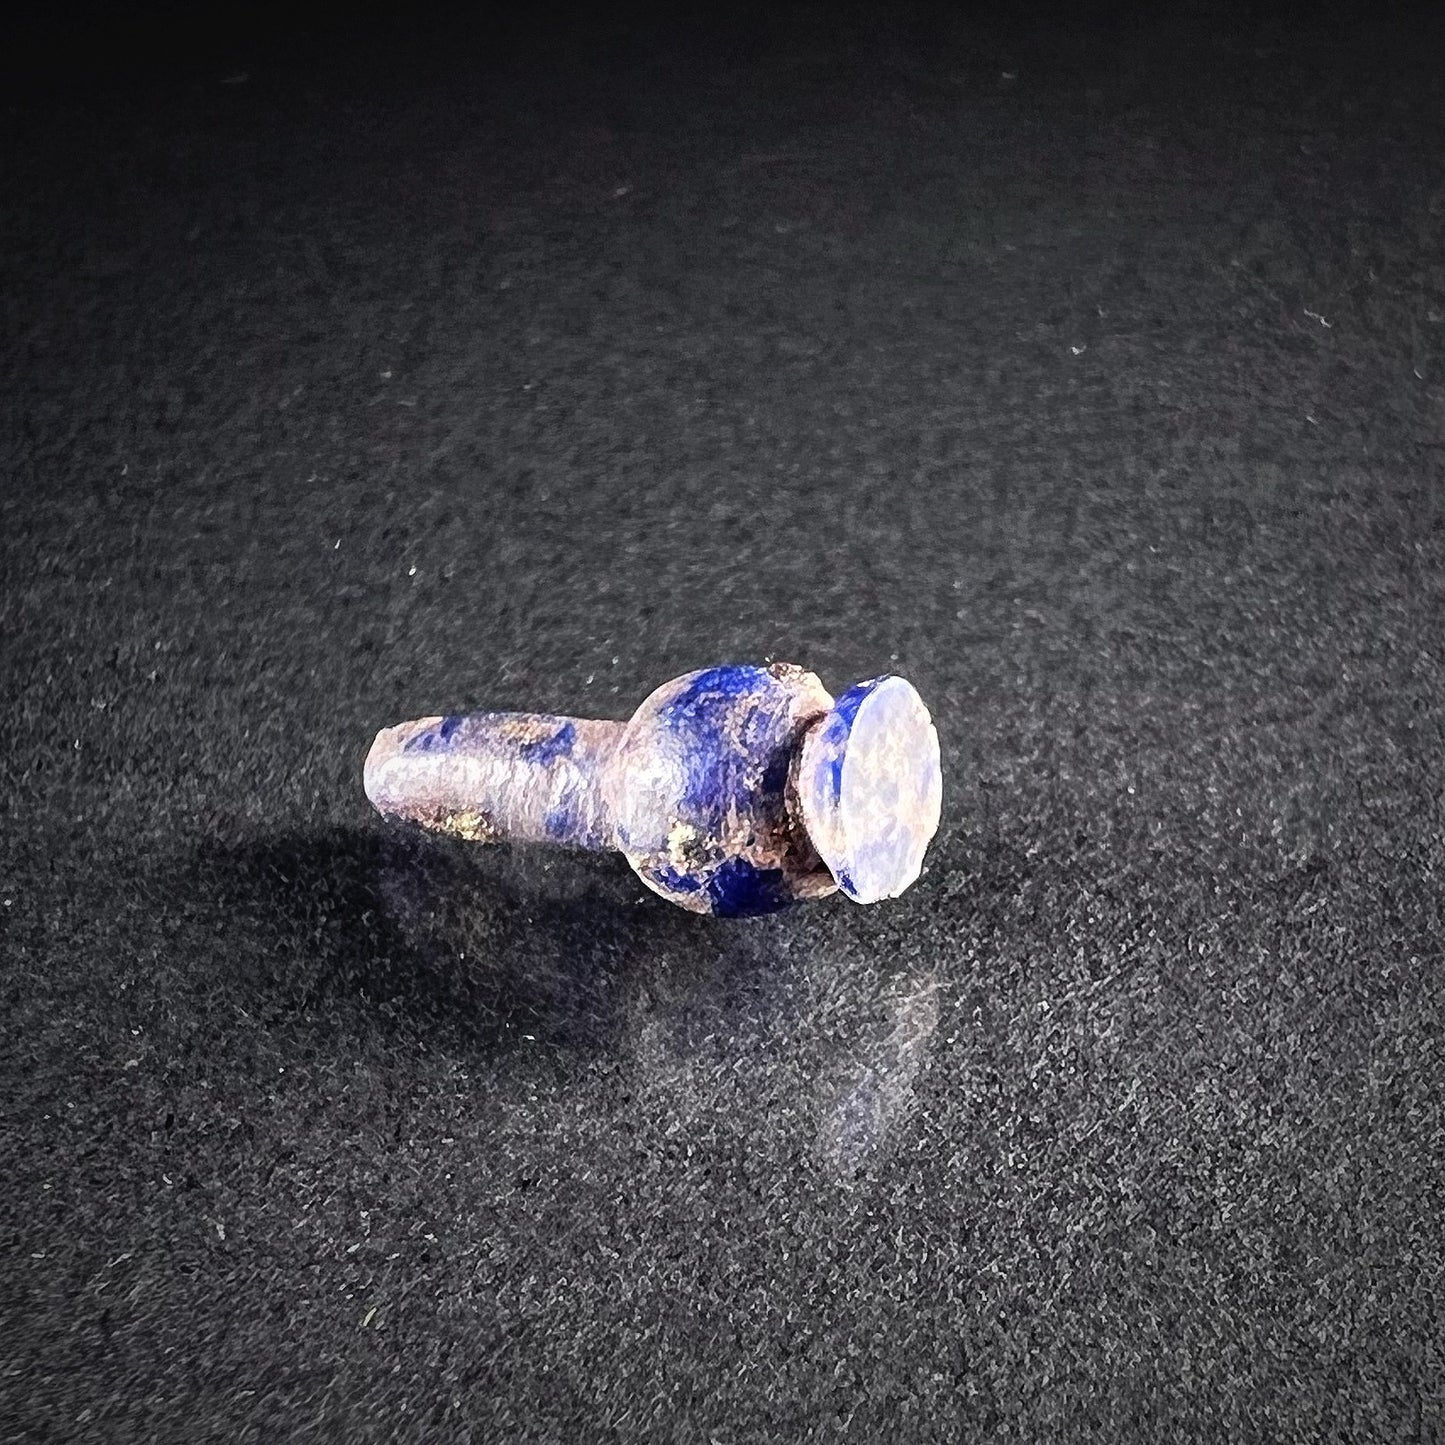 Muinaisegyptiläinen unikkoamuletti, lapis lazuli  - yksittäiskappale